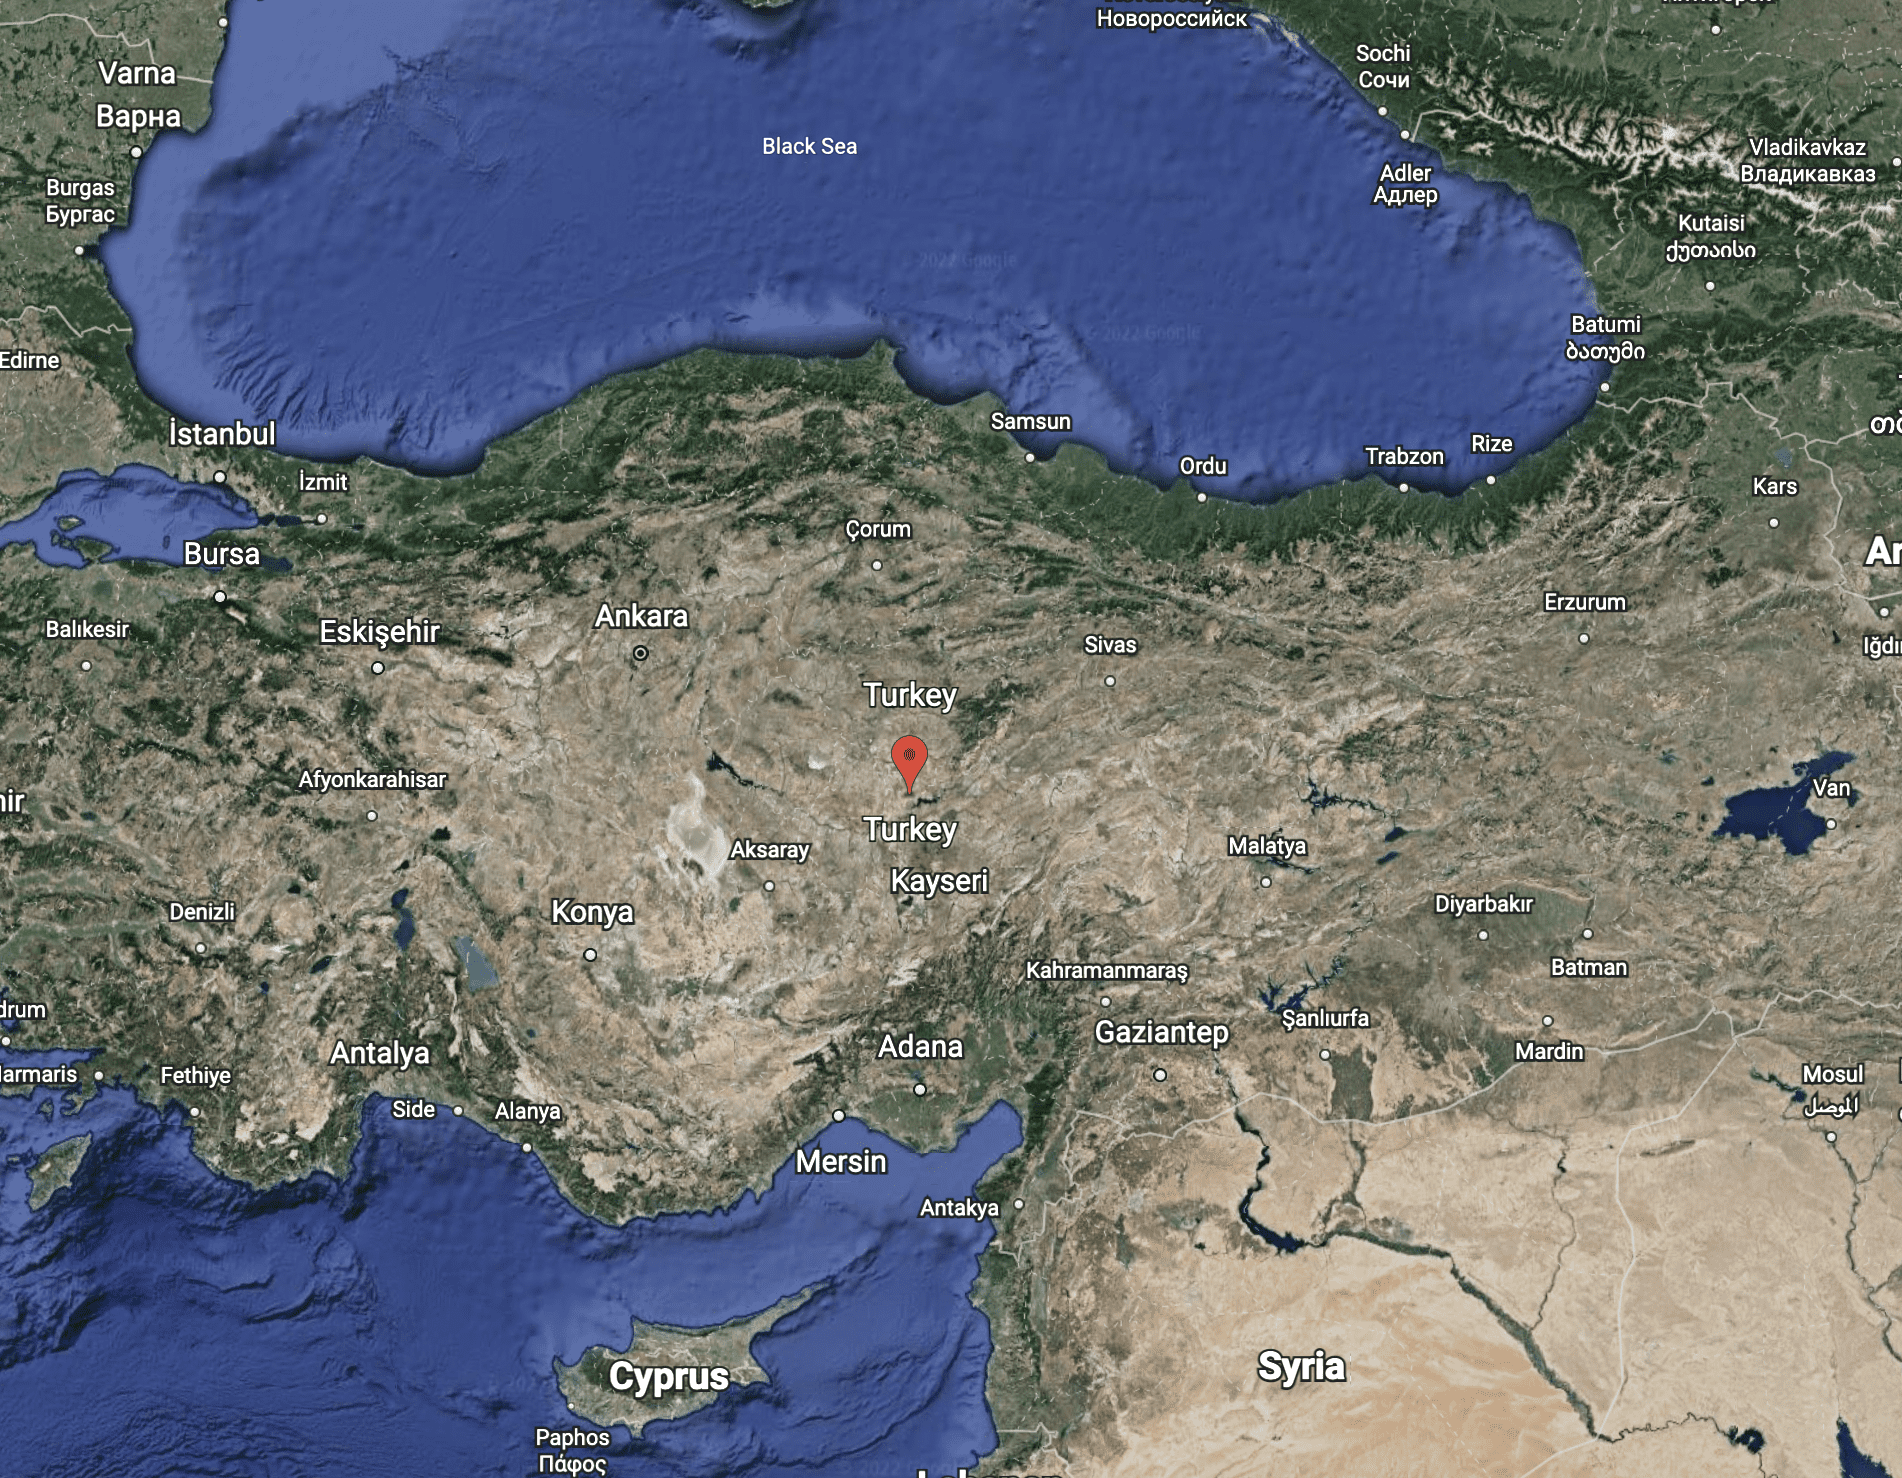 Google Earth Satellite Image of Turkey